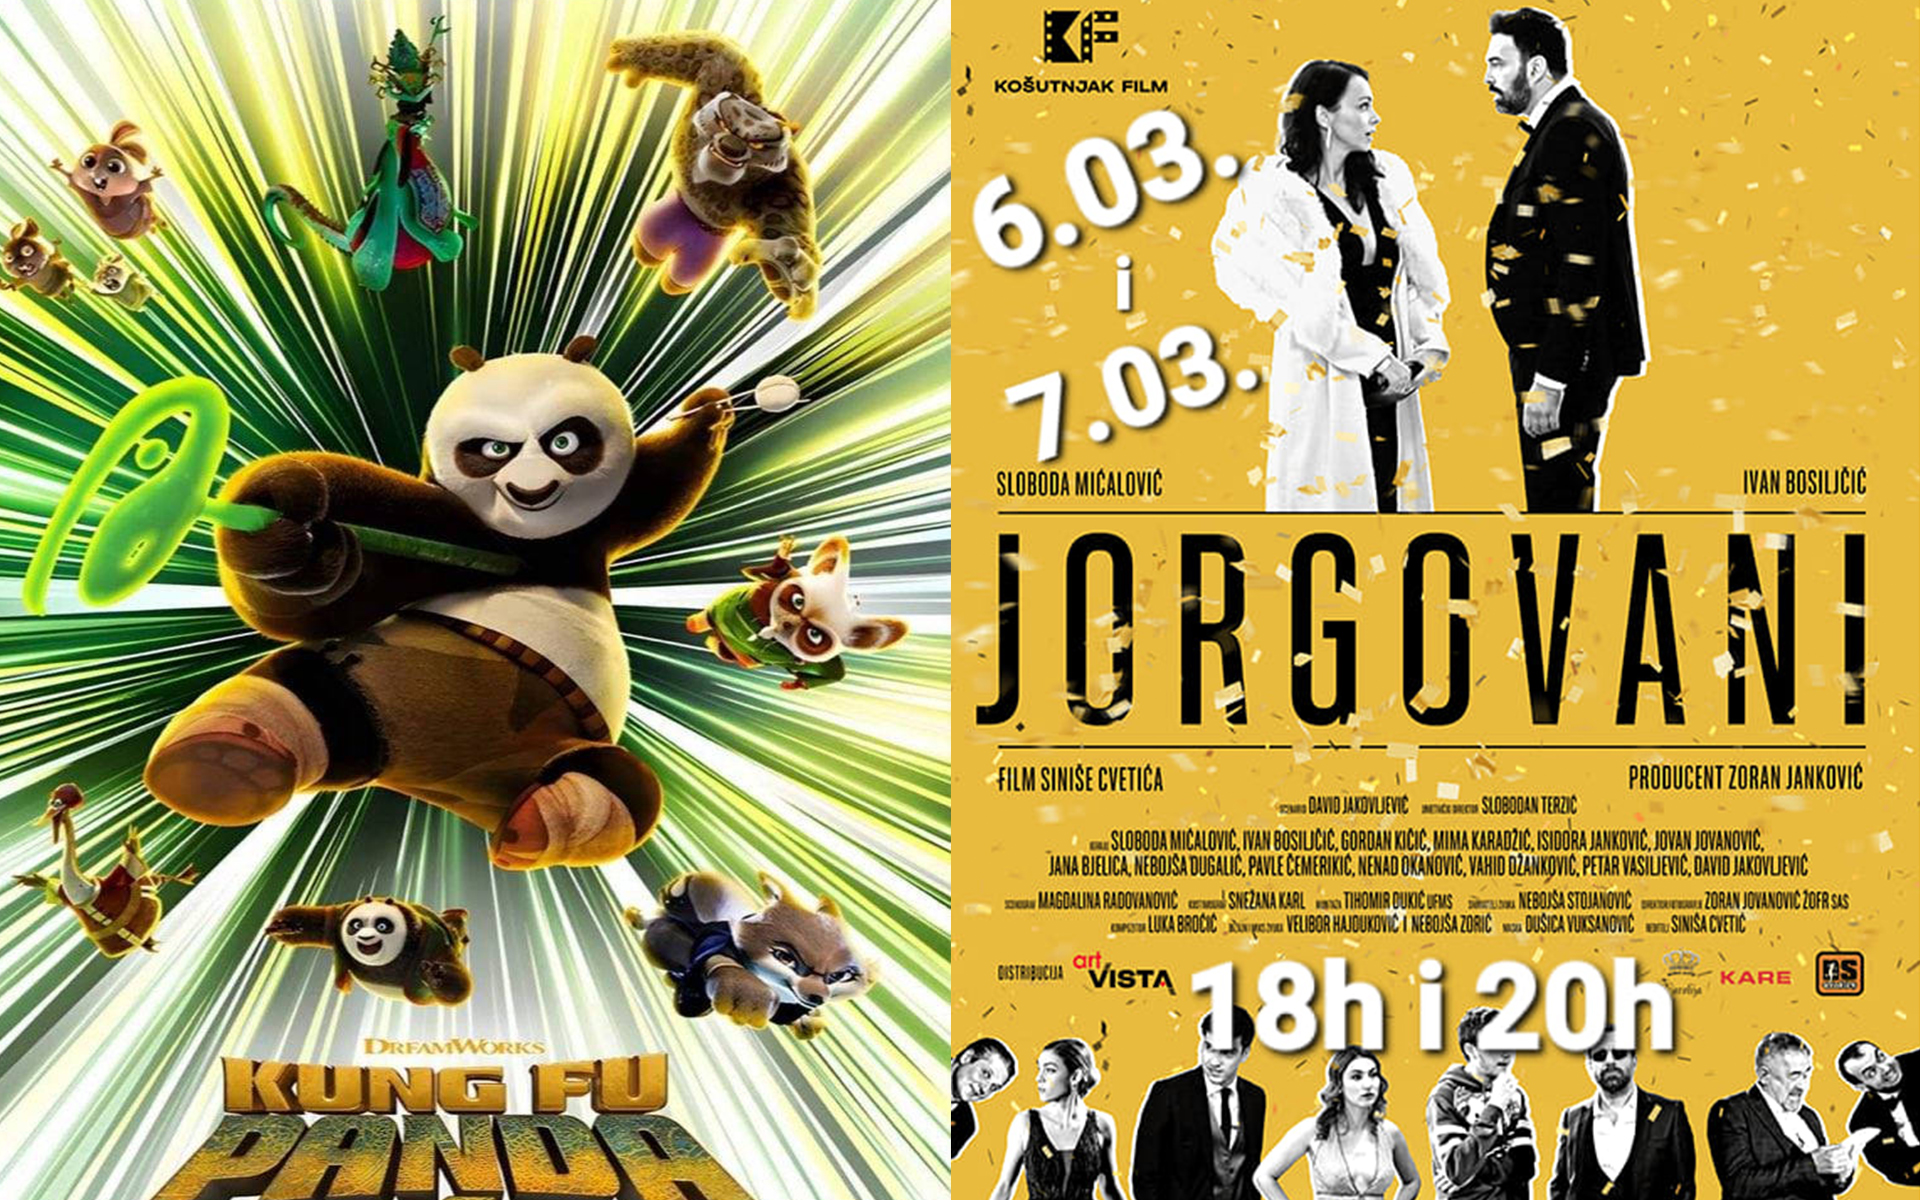 Projekcije filmova Jorgovani i Kung fu panda naredne nedelje u sali pozorišta